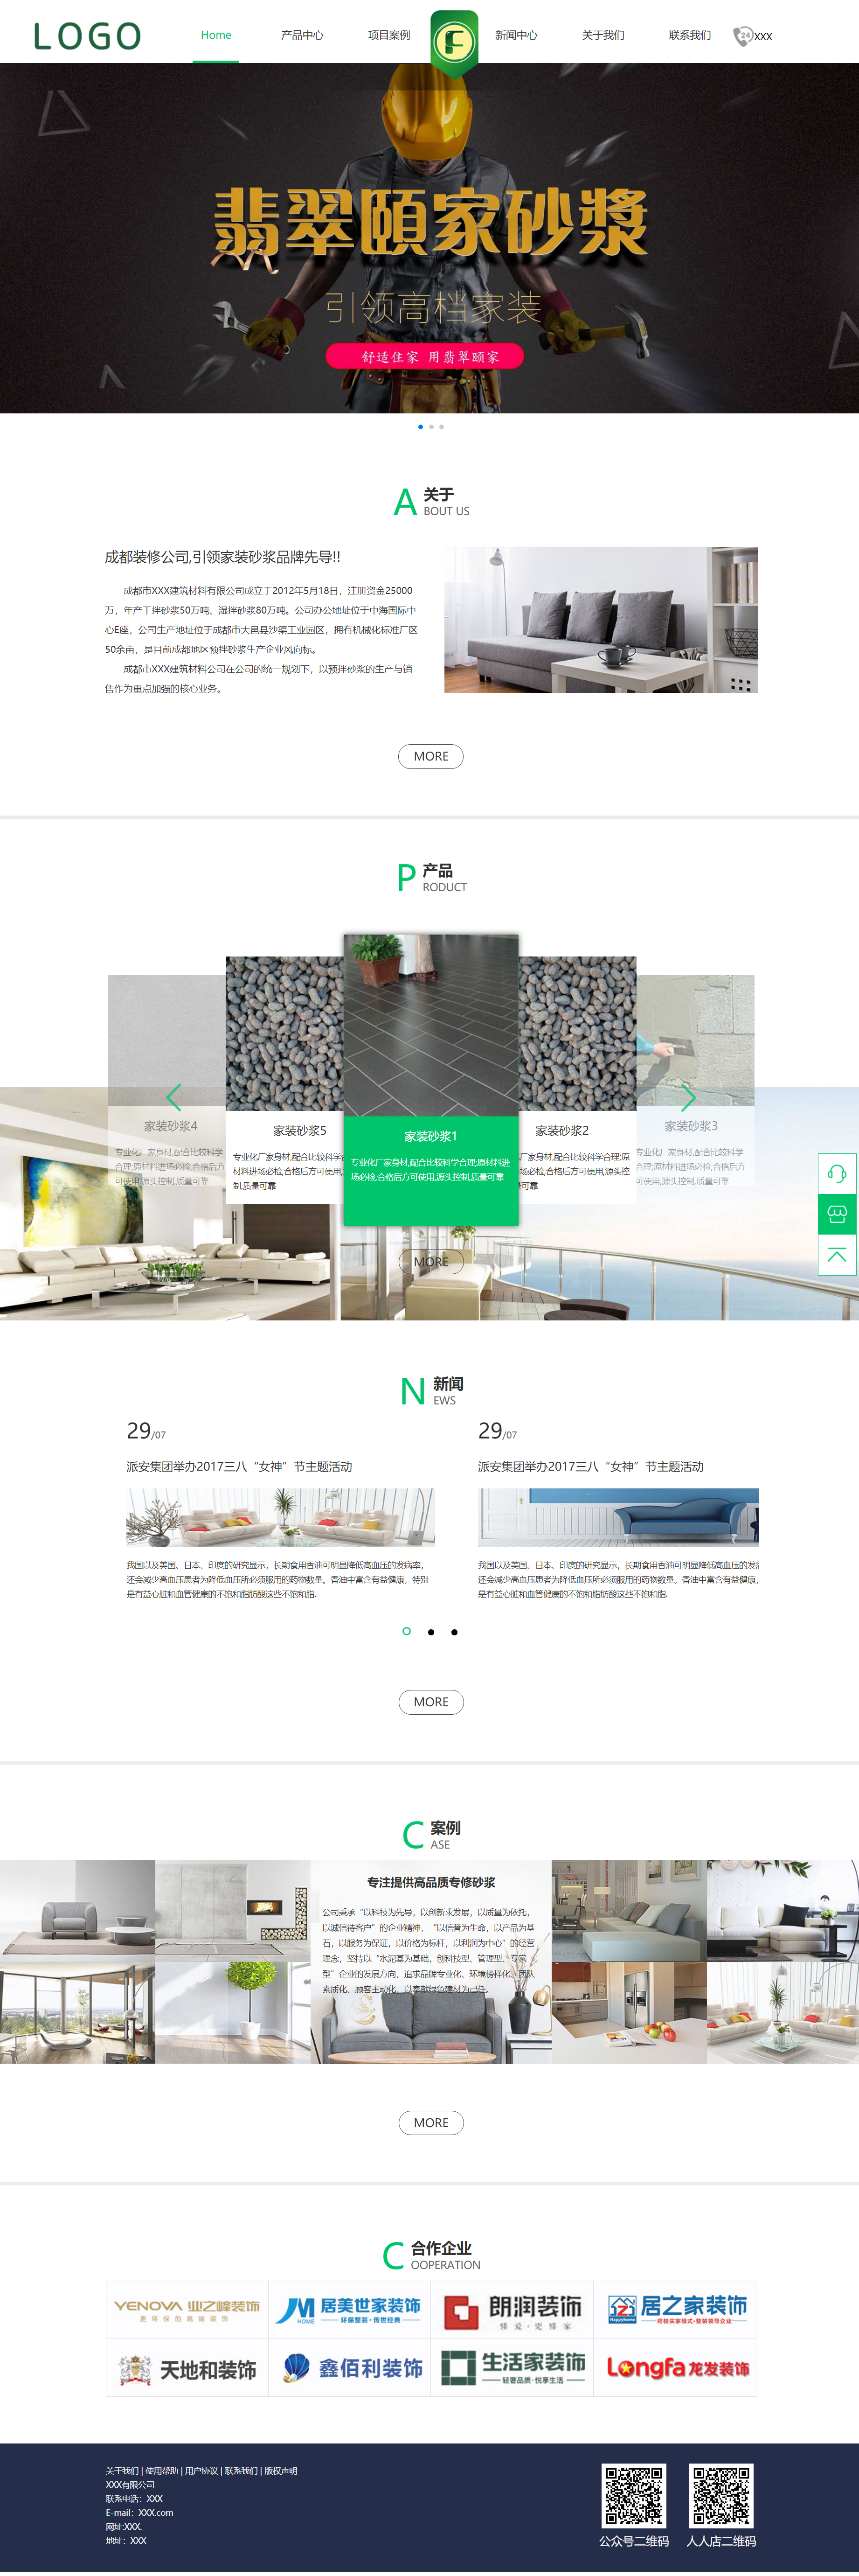 绿色简洁形式pc+wap建筑材料装饰企业网站模板代码